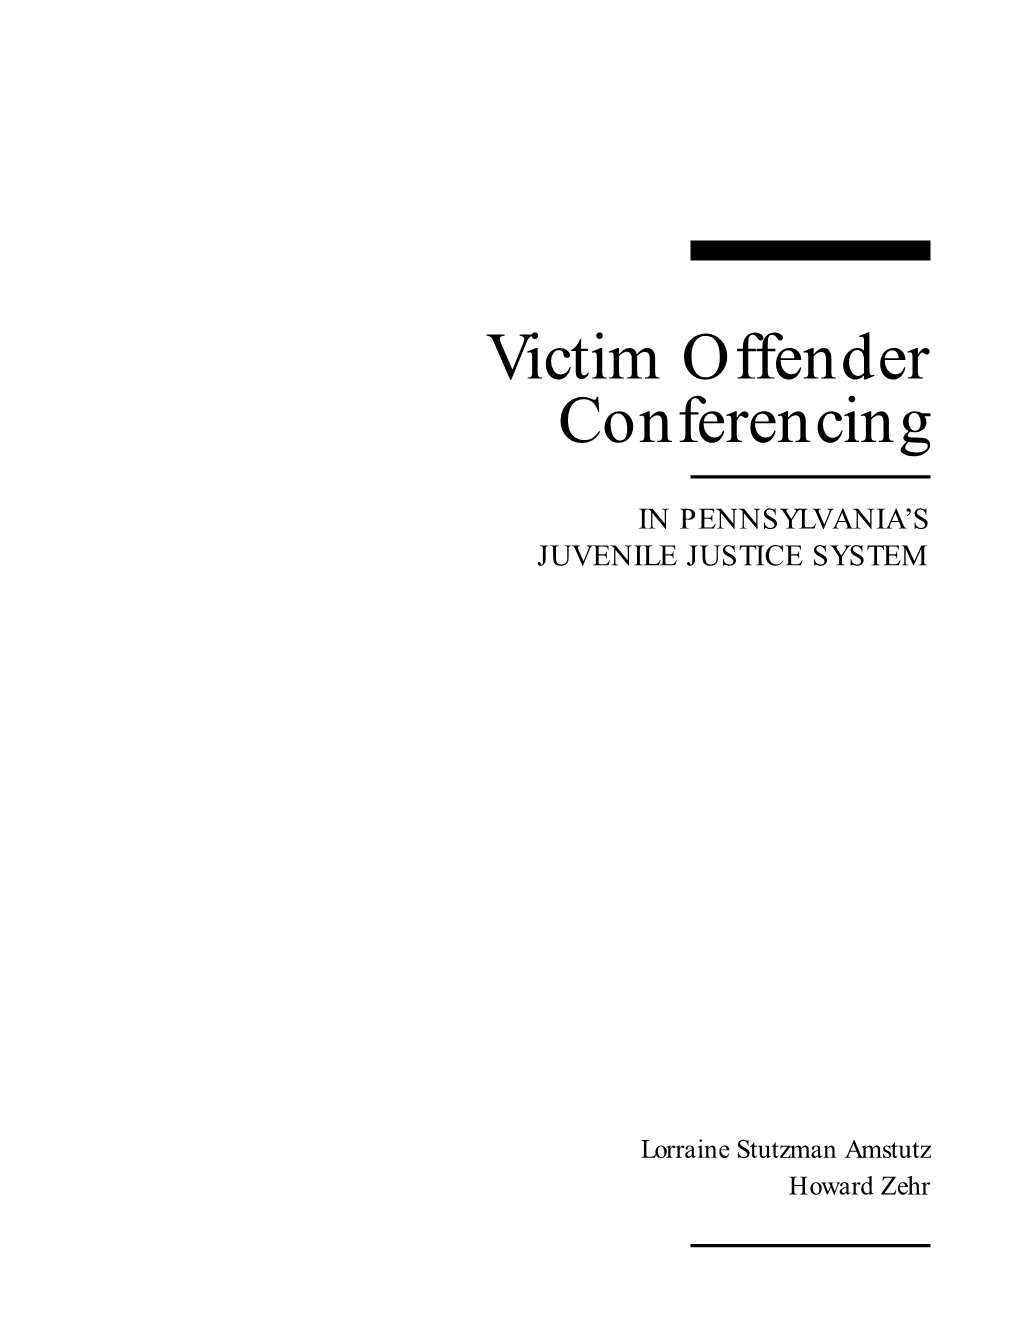 Victim Offender Conferencing